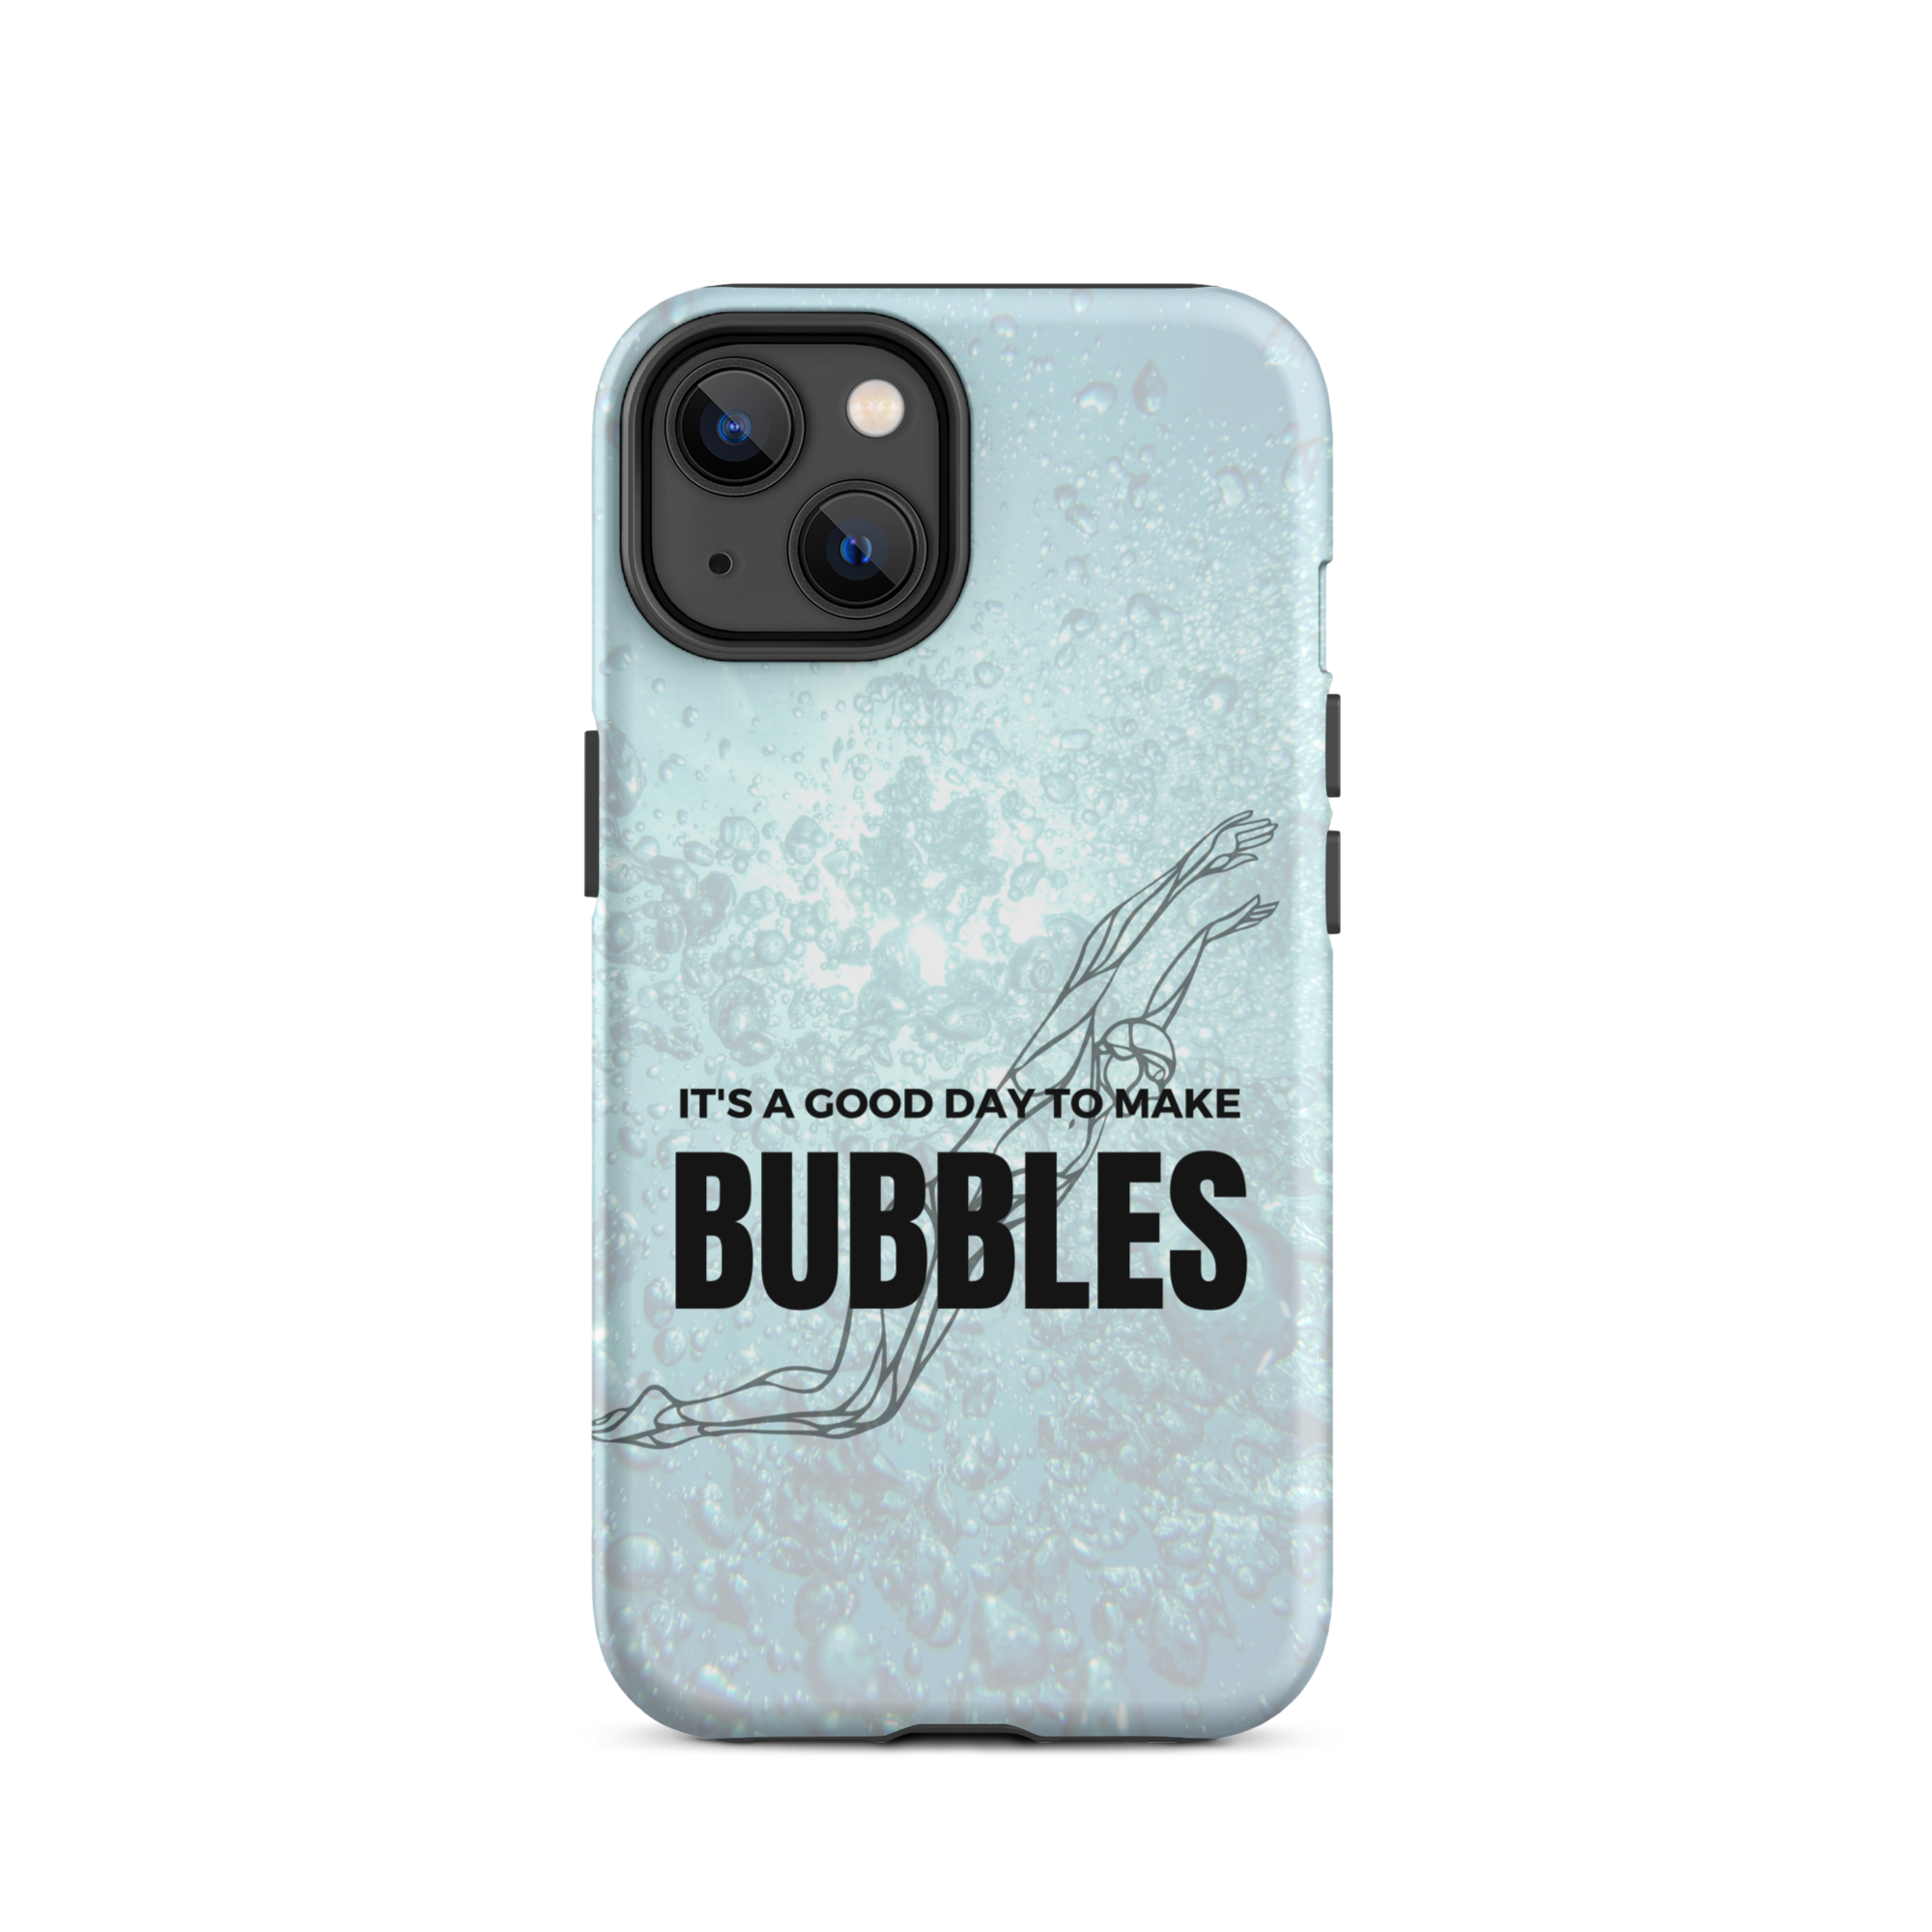 "Making Bubbles" - Tough iPhone case